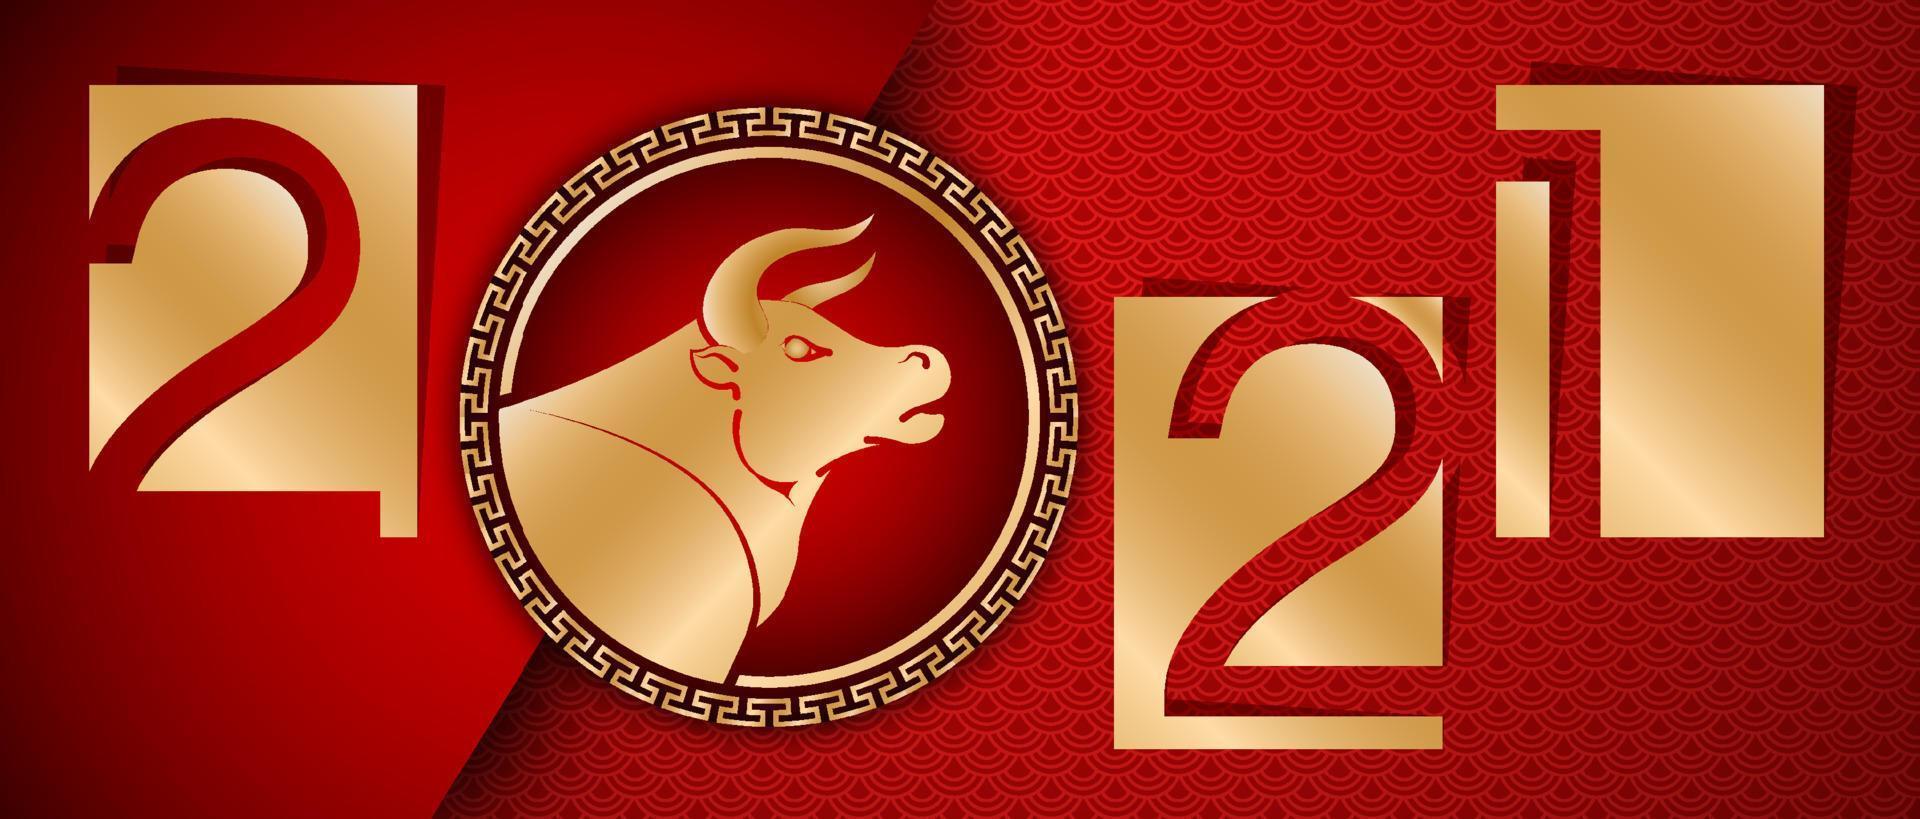 2021 año nuevo chino del buey, colores rojo y dorado con adornos decorativos tradicionales en un fondo. traducción al chino año del buey vector